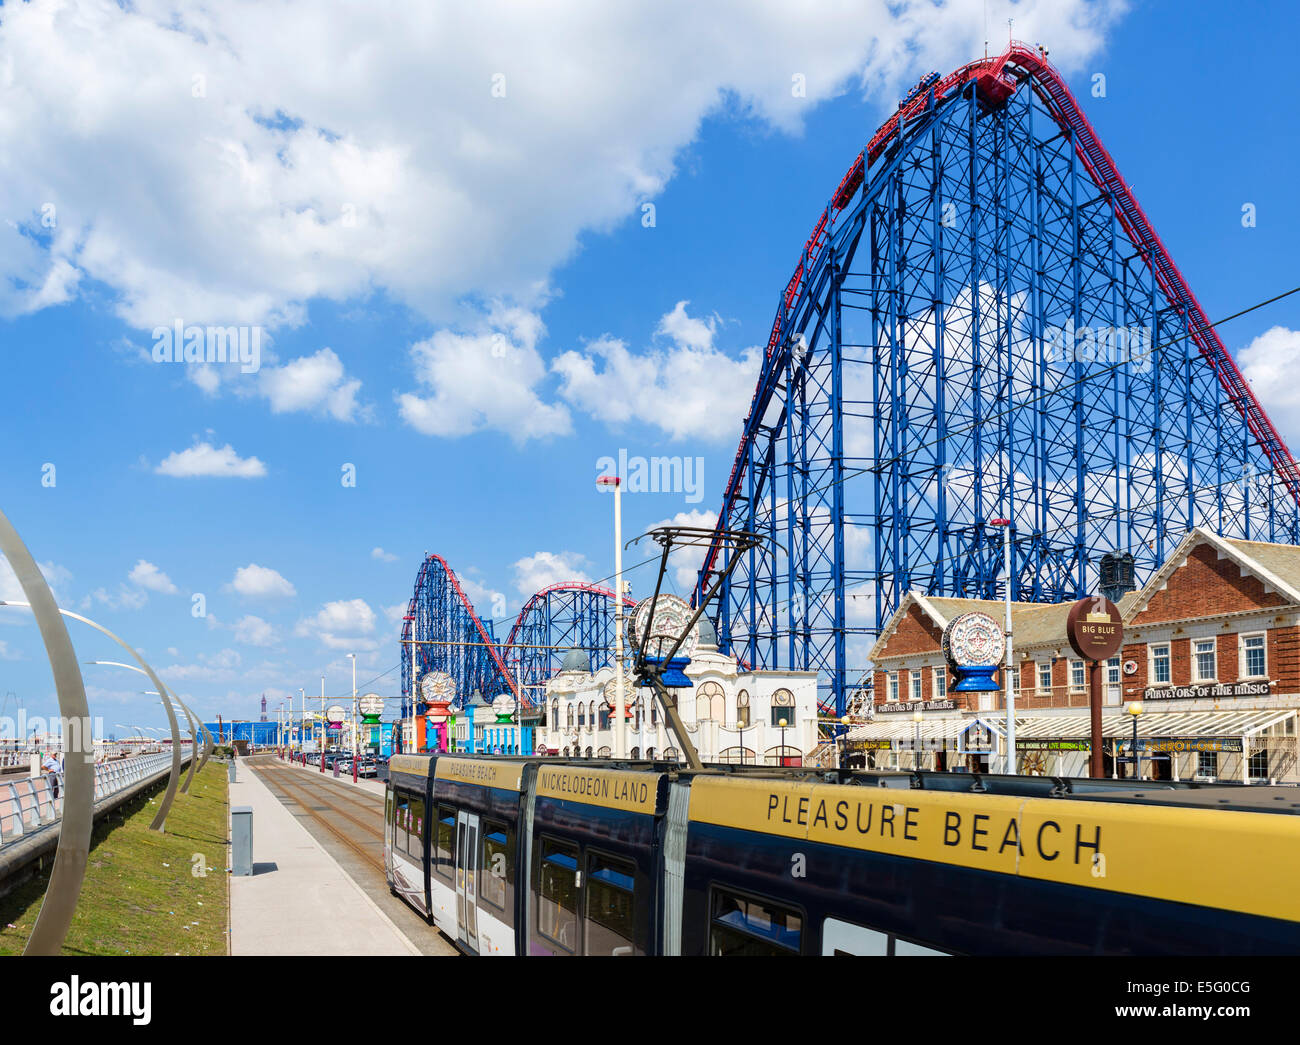 El tranvía en el Paseo Maritimo enfrente de la gran montaña rusa en el parque de atracciones Pleasure Beach, Blackpool, Lancashire, UK Foto de stock